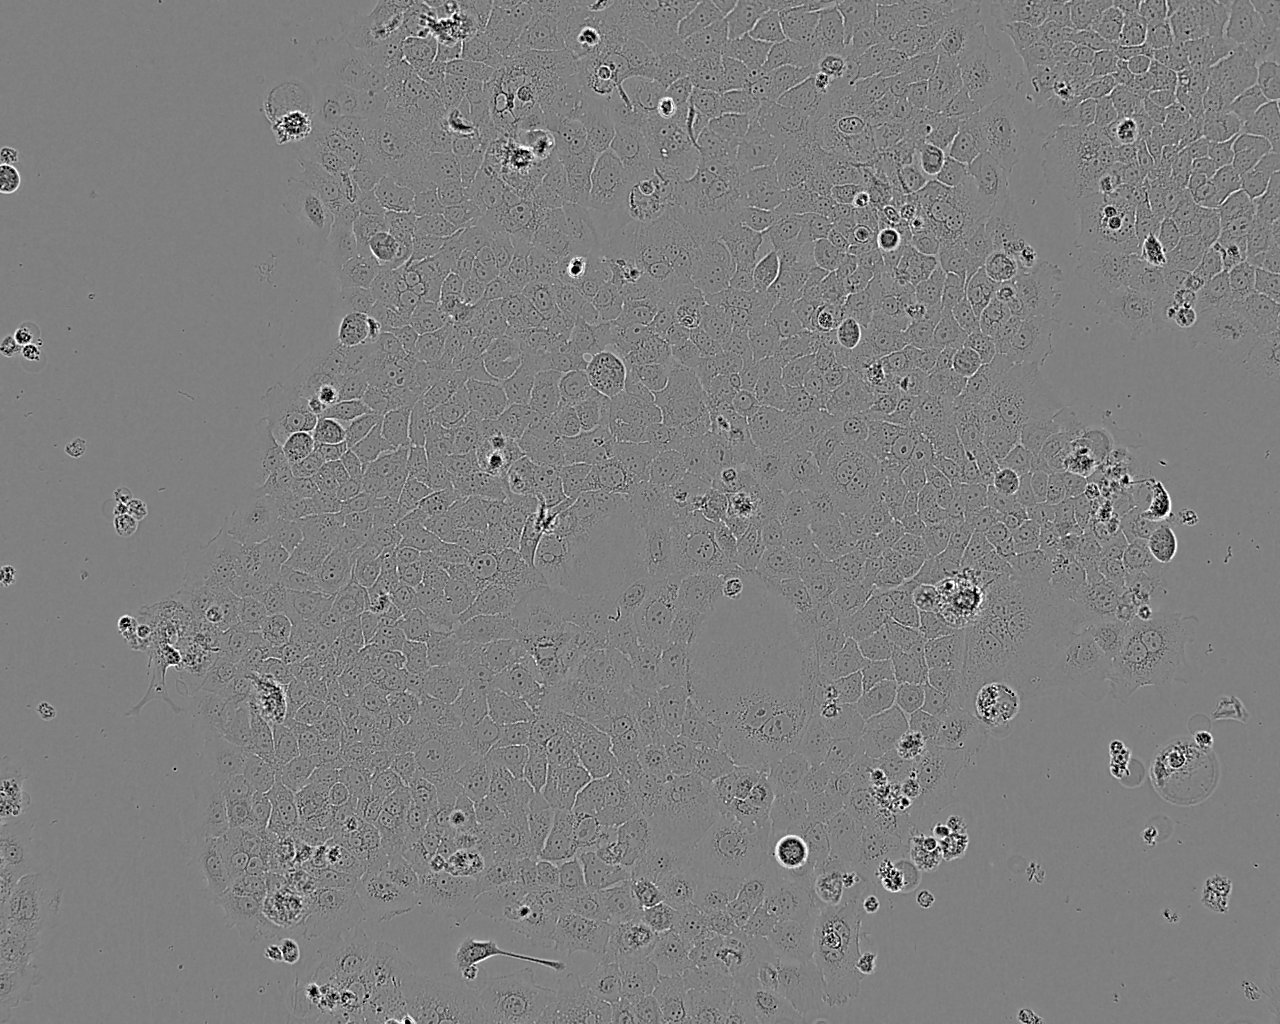 HeLa 229 epithelioid cells人宫颈癌细胞系